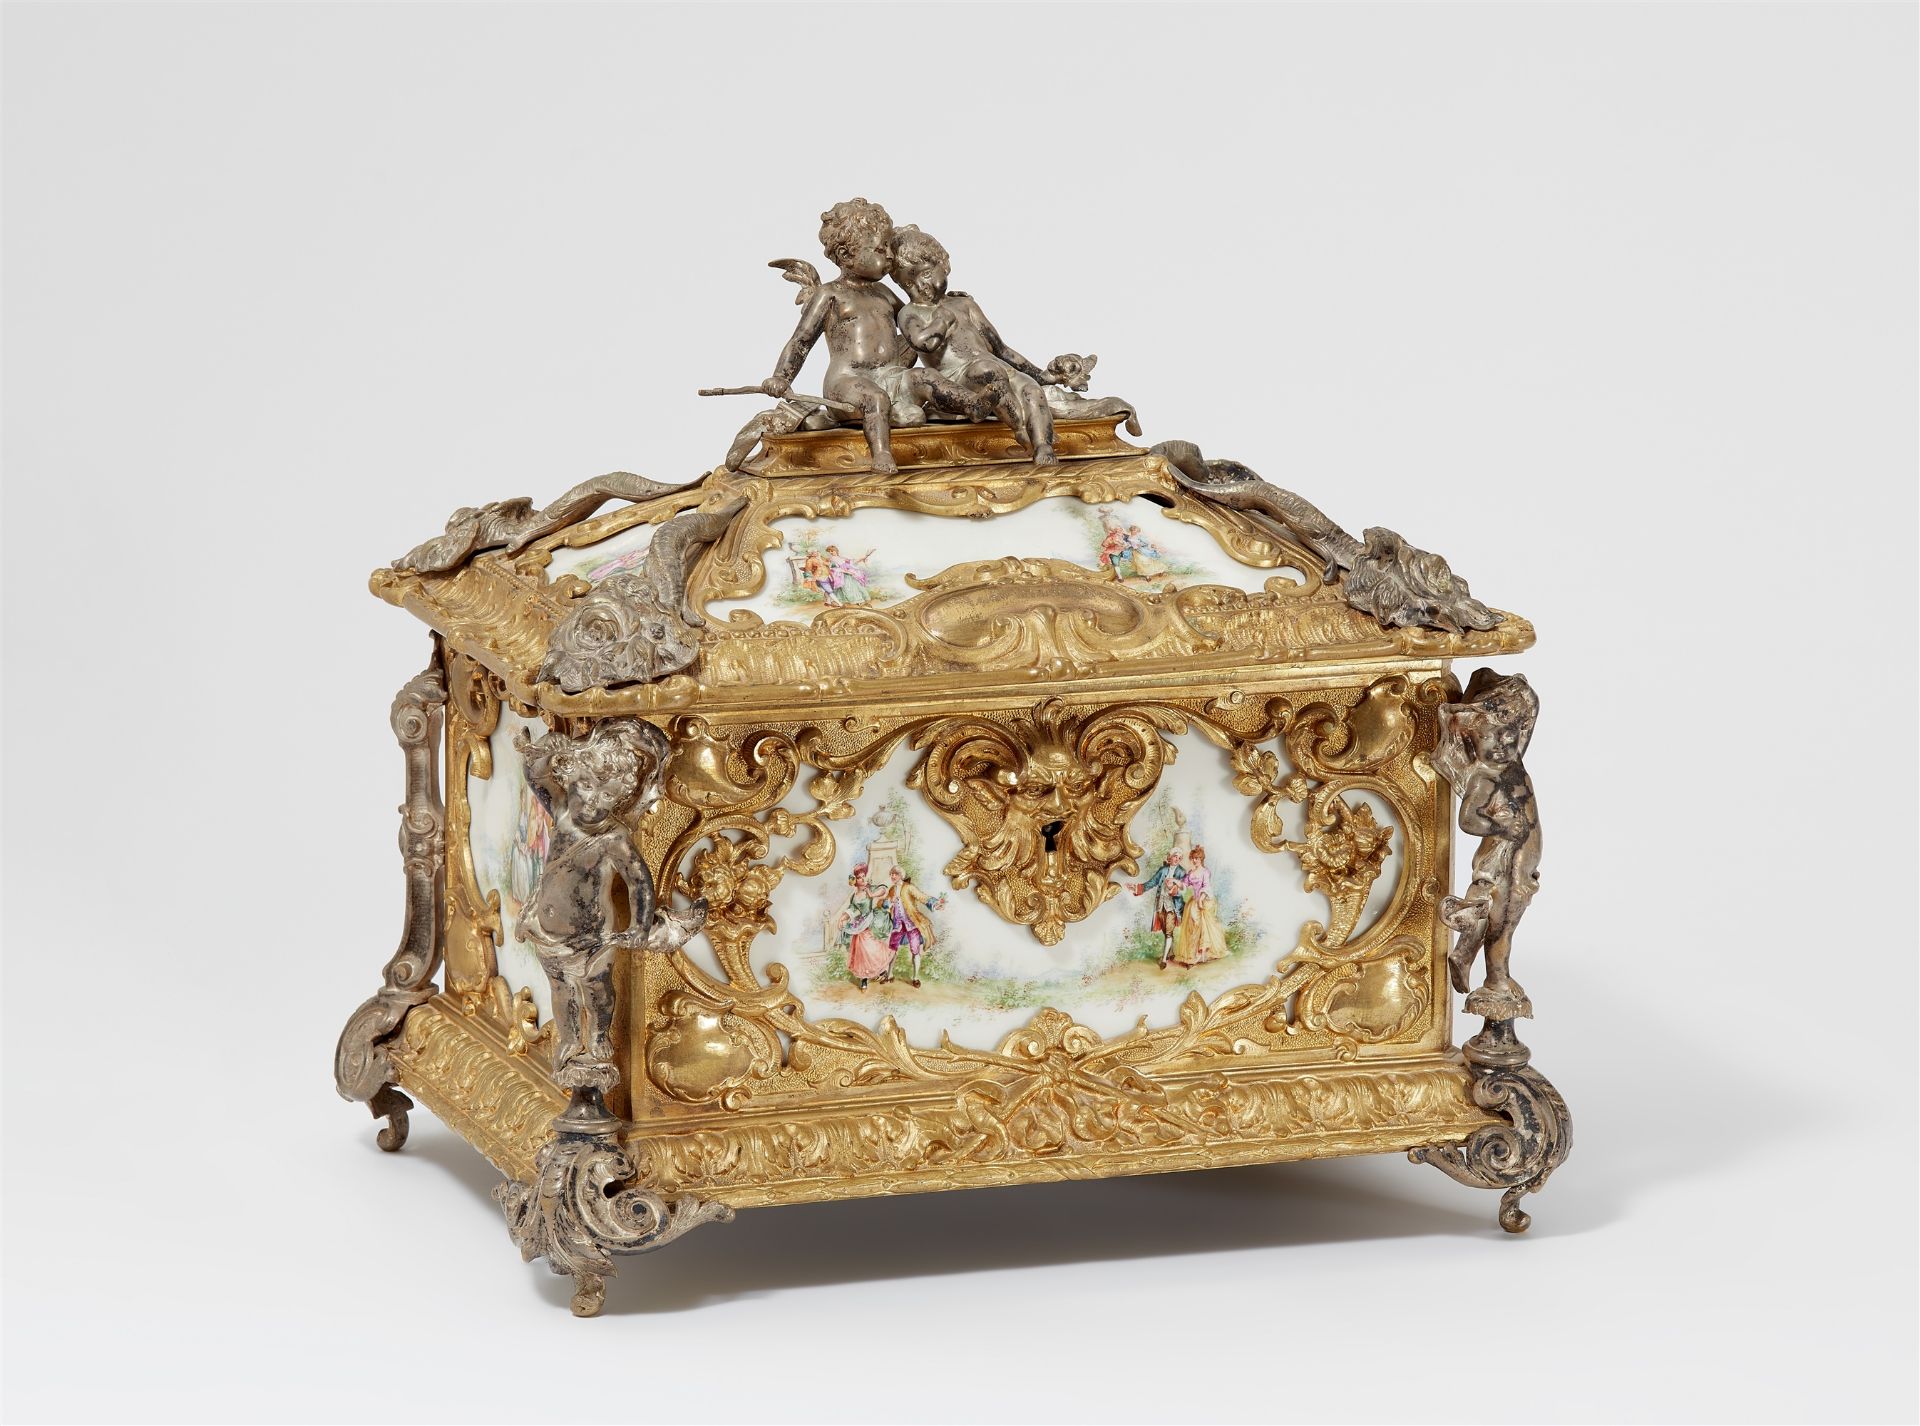 An opulent gilt bronze casket with allegories of love